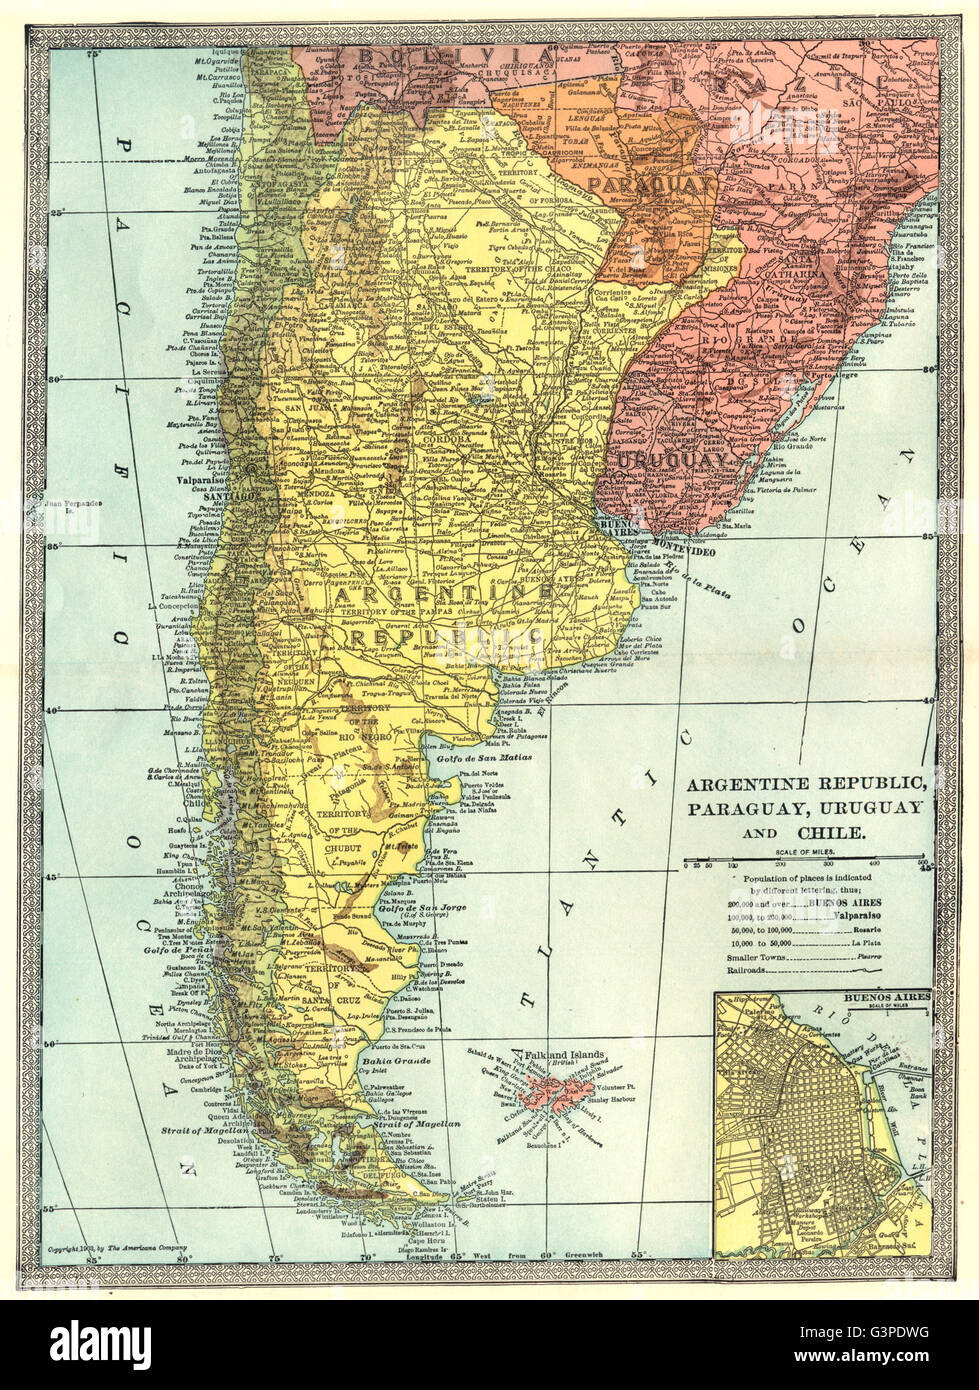 Mapa de Chile, Argentina, Uruguay, Paraguay y Brasil.